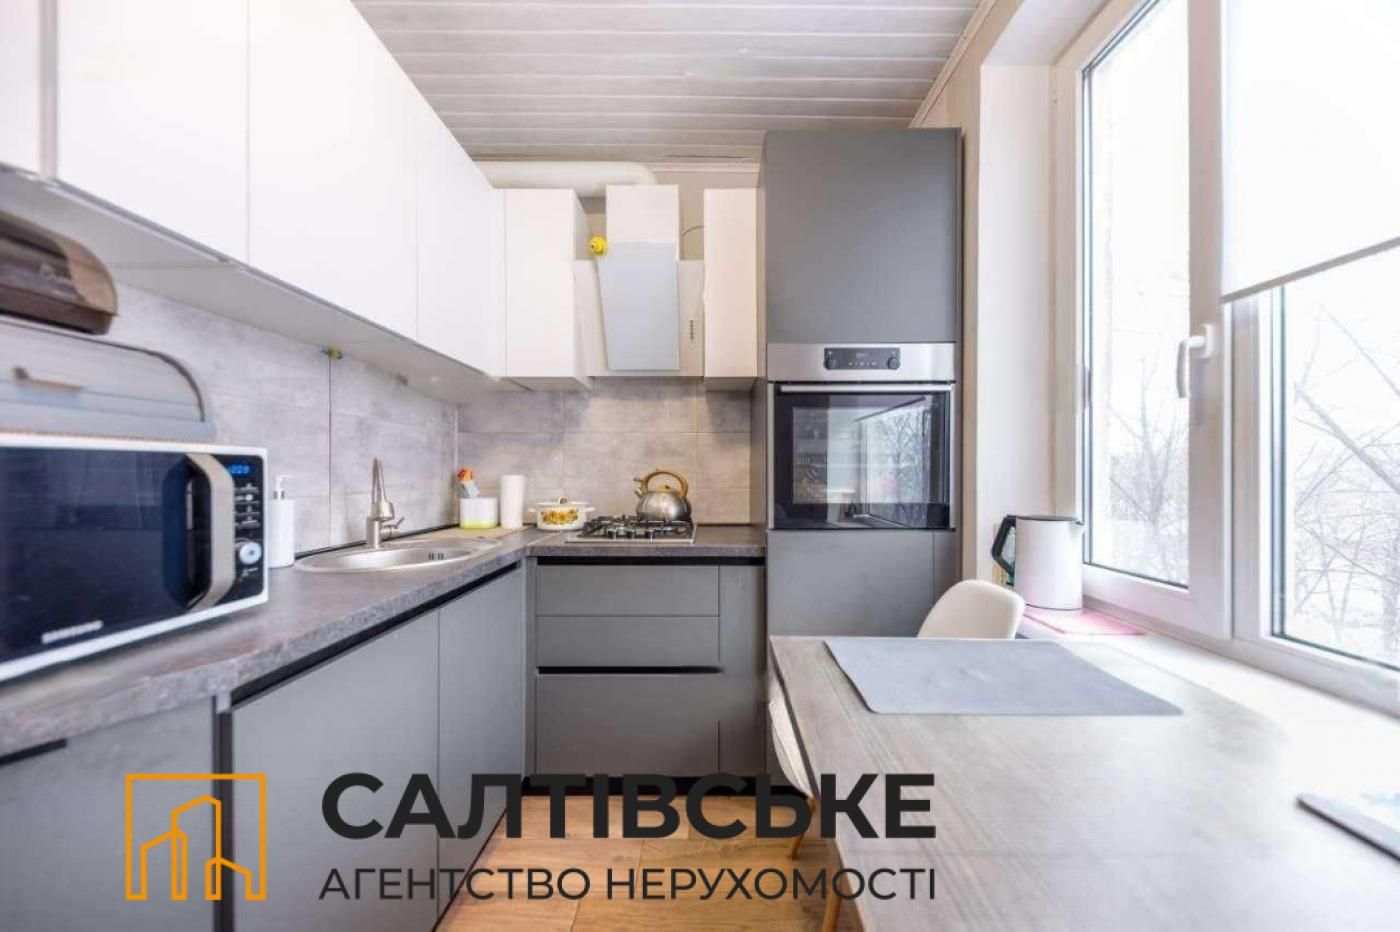 ИК-7870 Продам 2К квартиру на Салтовке Героев труда 533 м/р